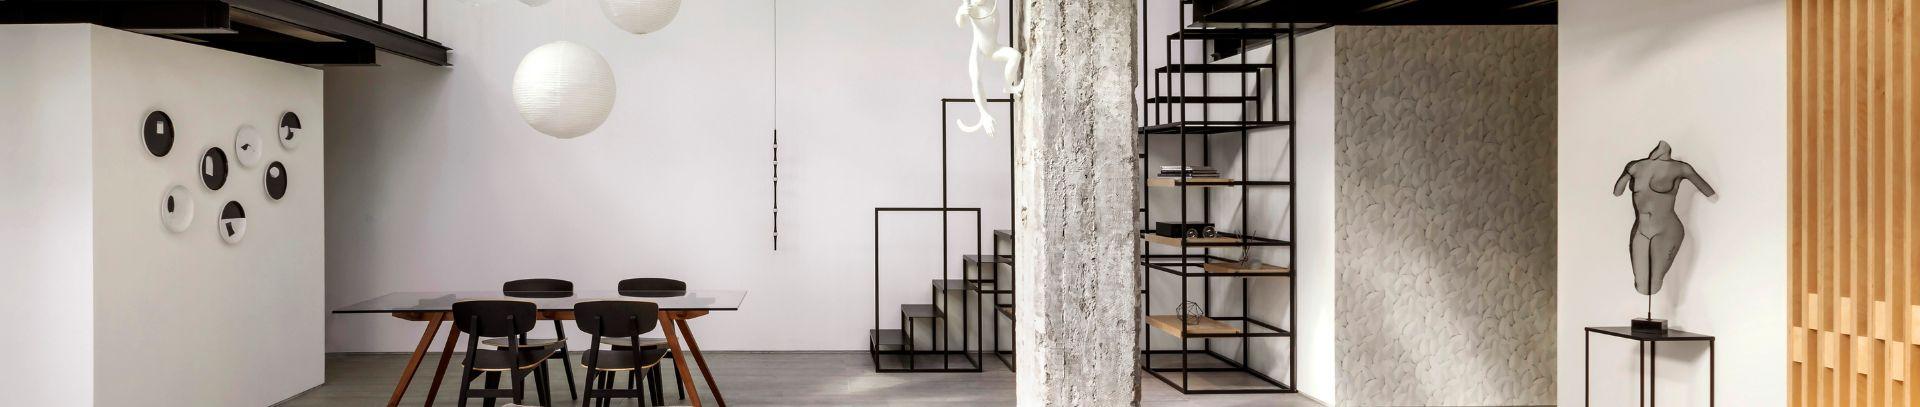 Gestaltung eines modernen Lofts in Schwarz und Weiß mit Feinsteinzeugfliesen | Casalgrande Padana